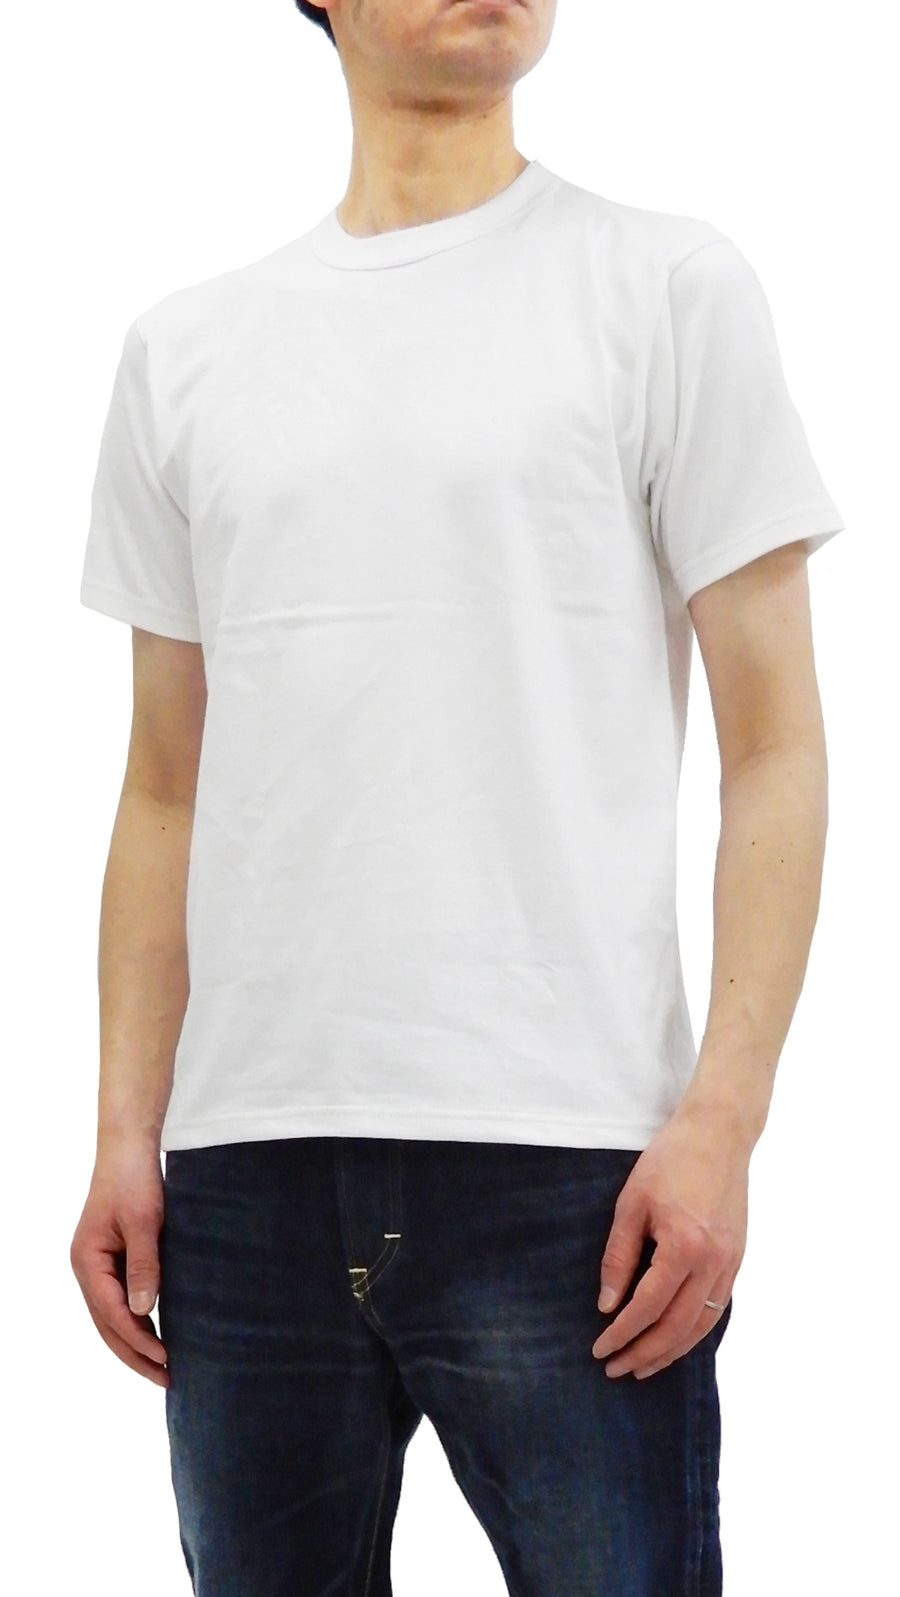 Whitesvill Men's 2-Pack Plain T-shirt Short Sleeve Tee Toyo Enterprises WV73544 Off-White